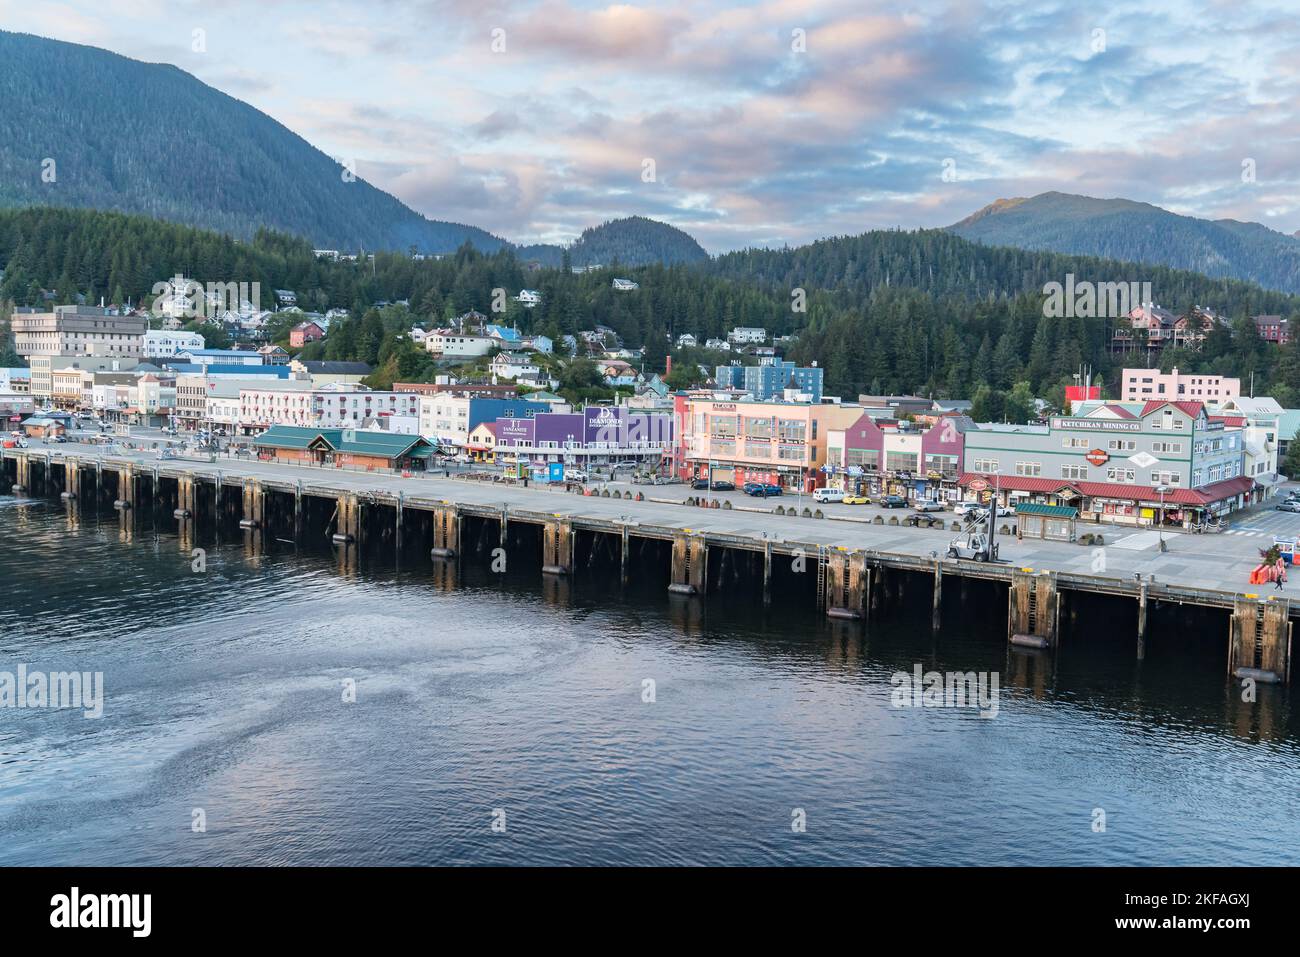 Ketchikan, AK - 9 septembre 2022 : vue d'ensemble du port de Ketchikan, Alaska depuis le front de mer Banque D'Images